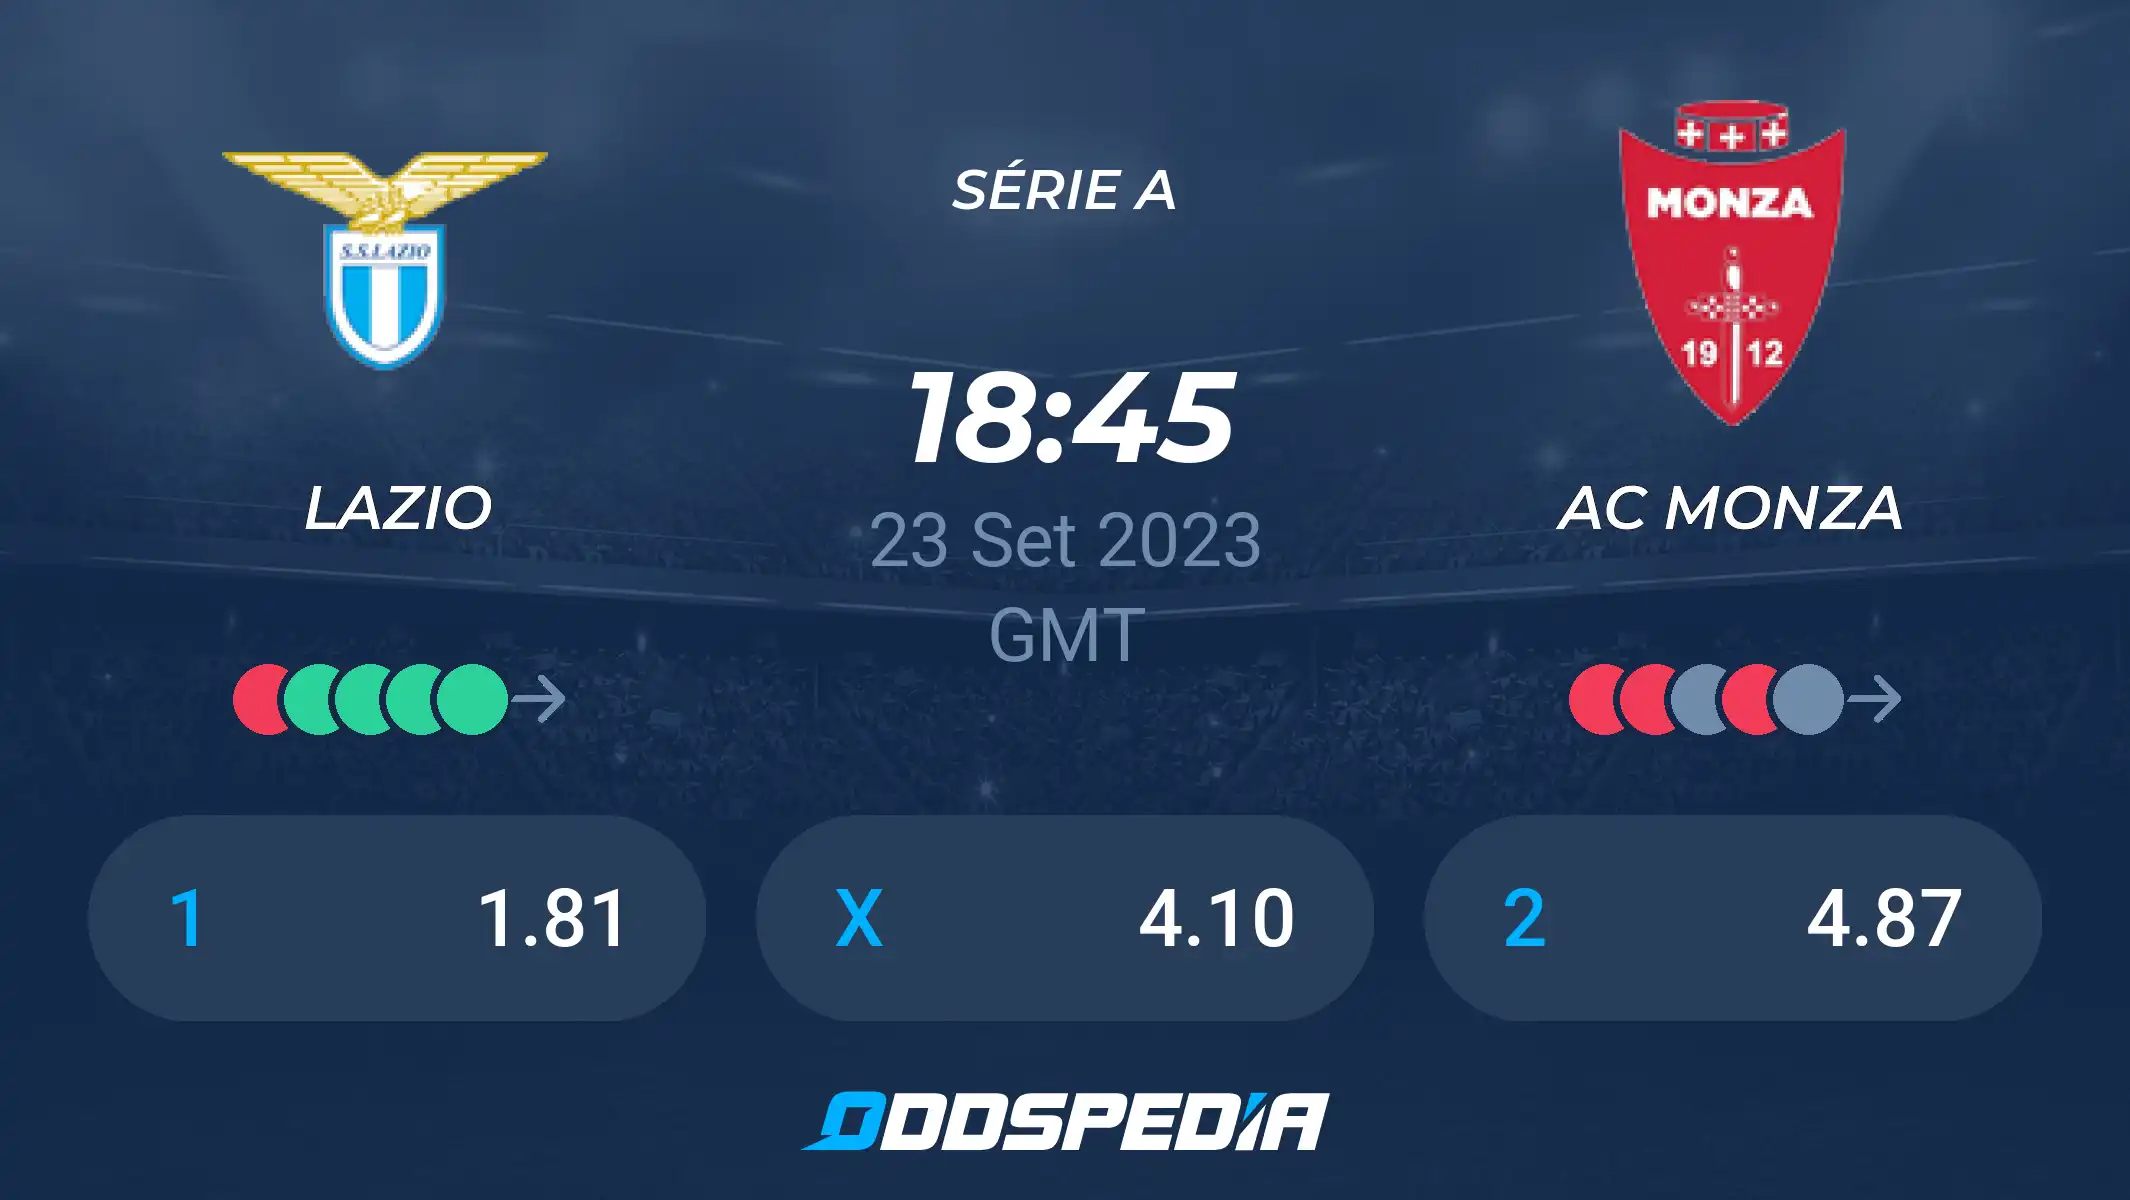 AC Monza vs Lazio: A Clash of Football Titans